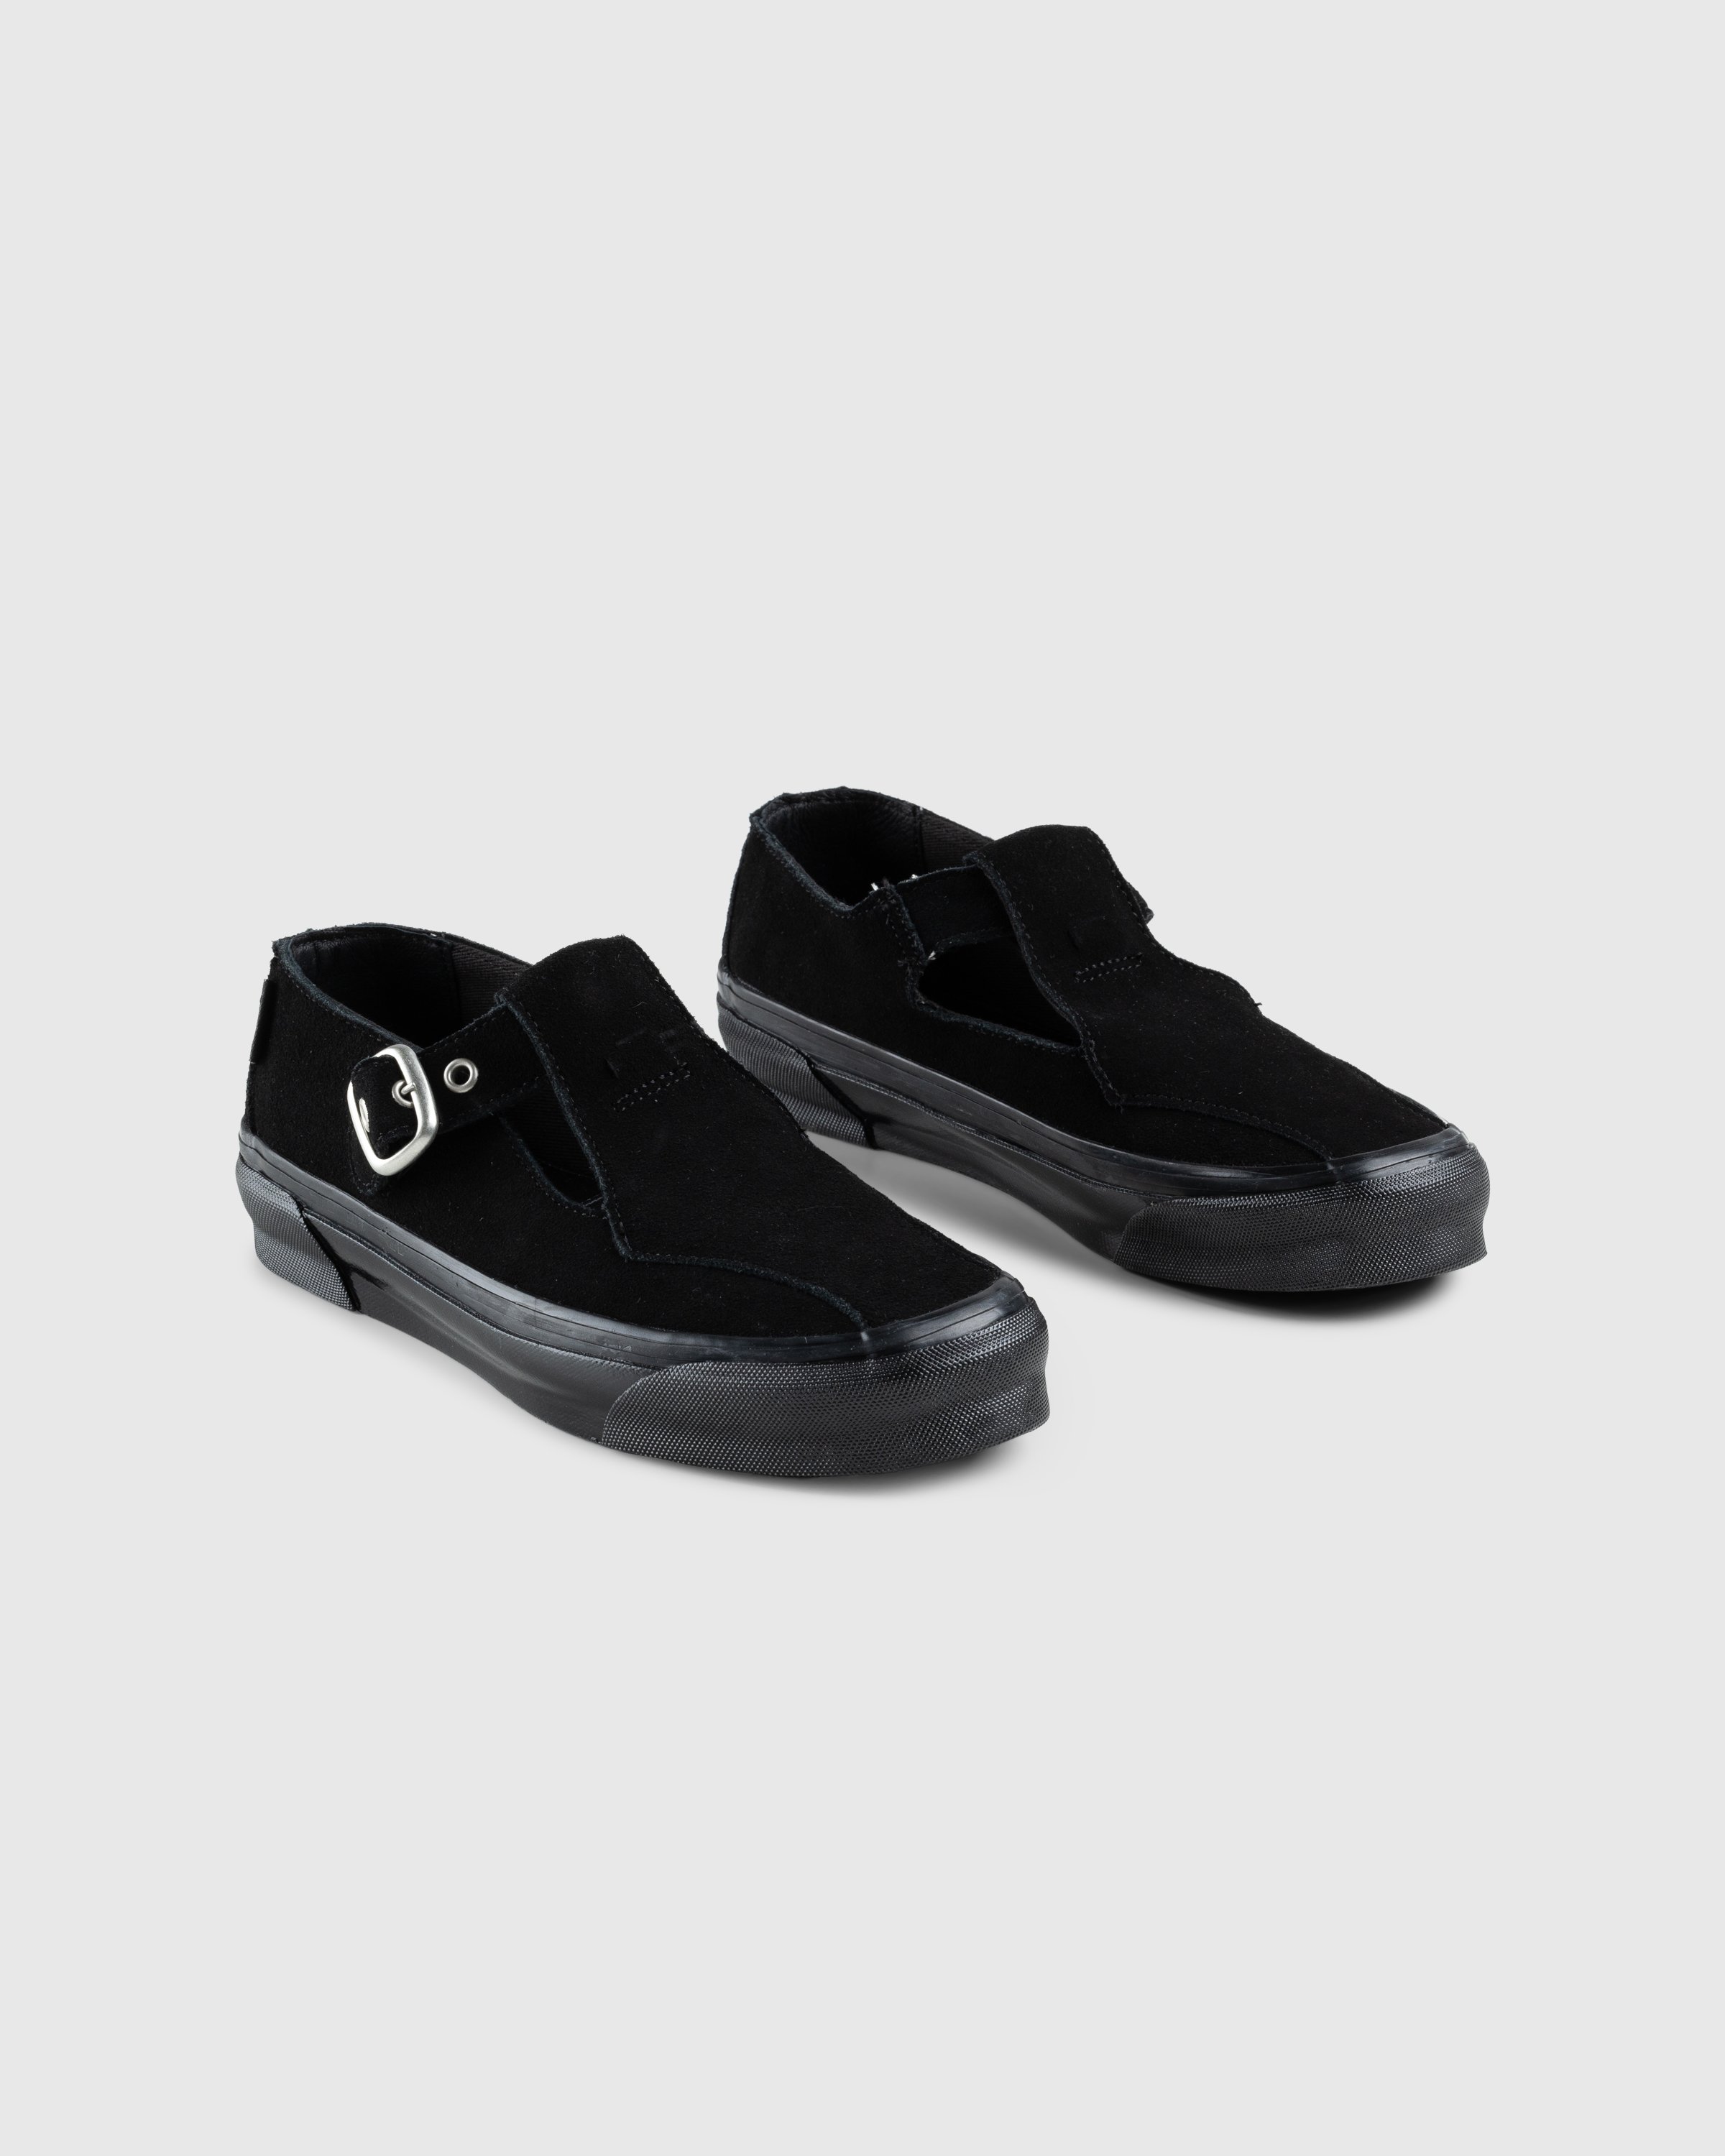 Vans - OG Style 93 LX Black - Footwear - Black - Image 3